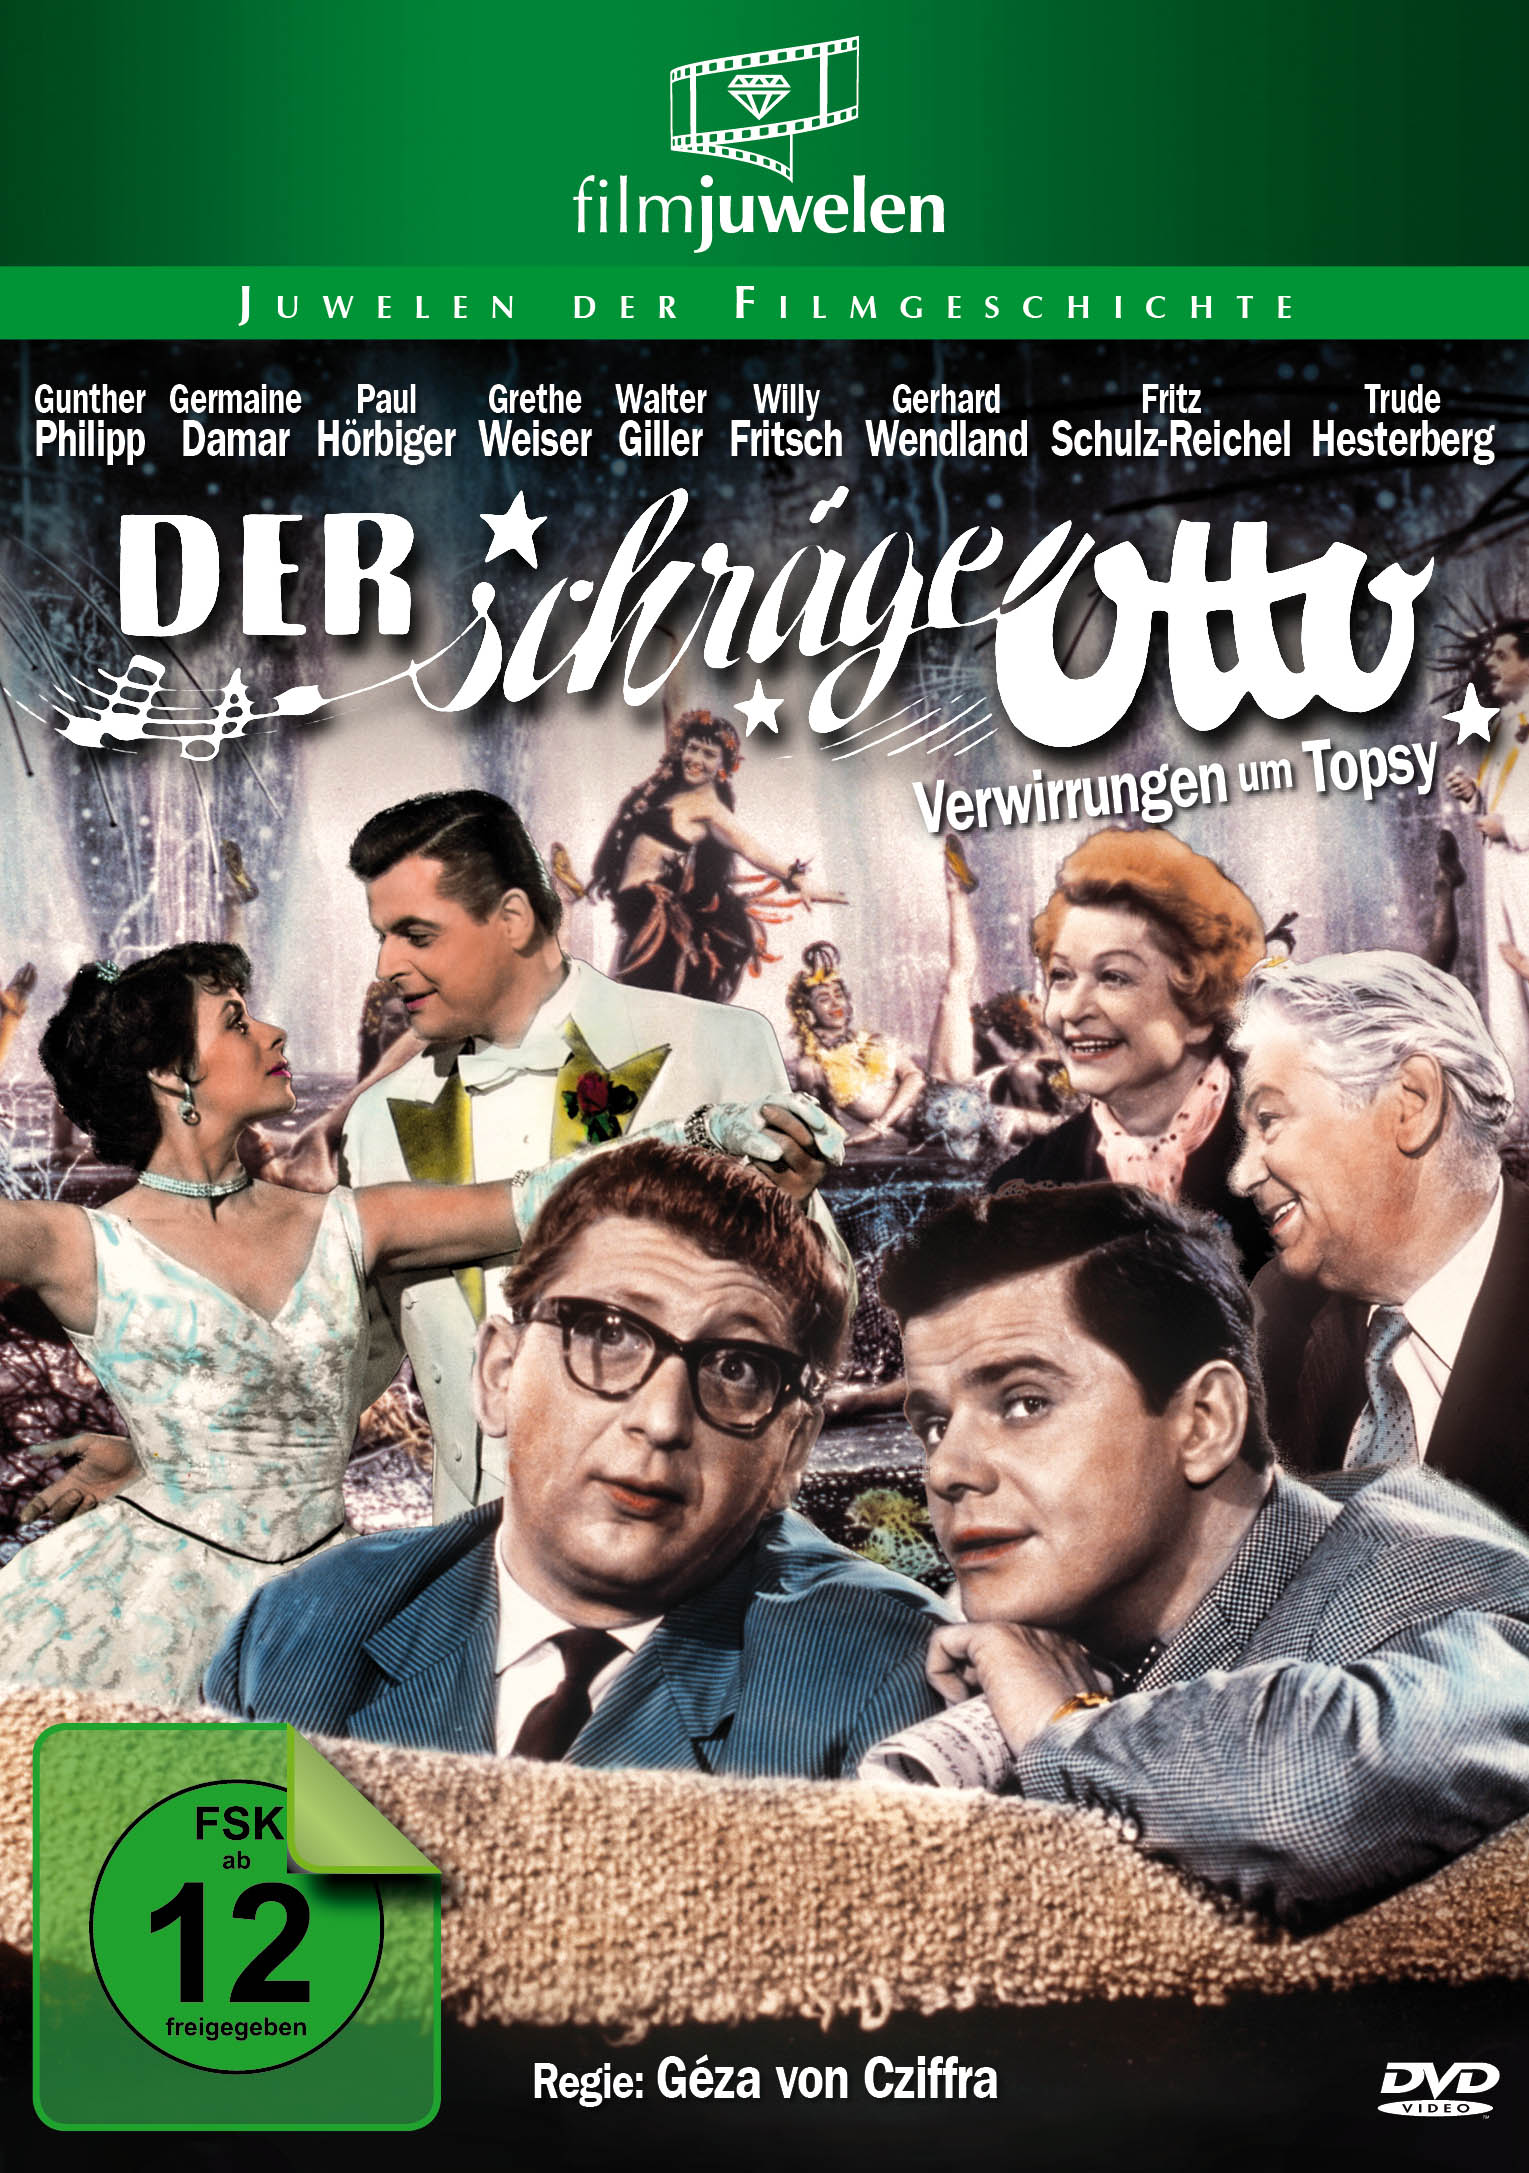 Der Schräge Otto Germaine Damar Walter Giller Willy Fritsch 1957 Collectible Memorabilia Danish Movie Theater Souvenir Original Programme